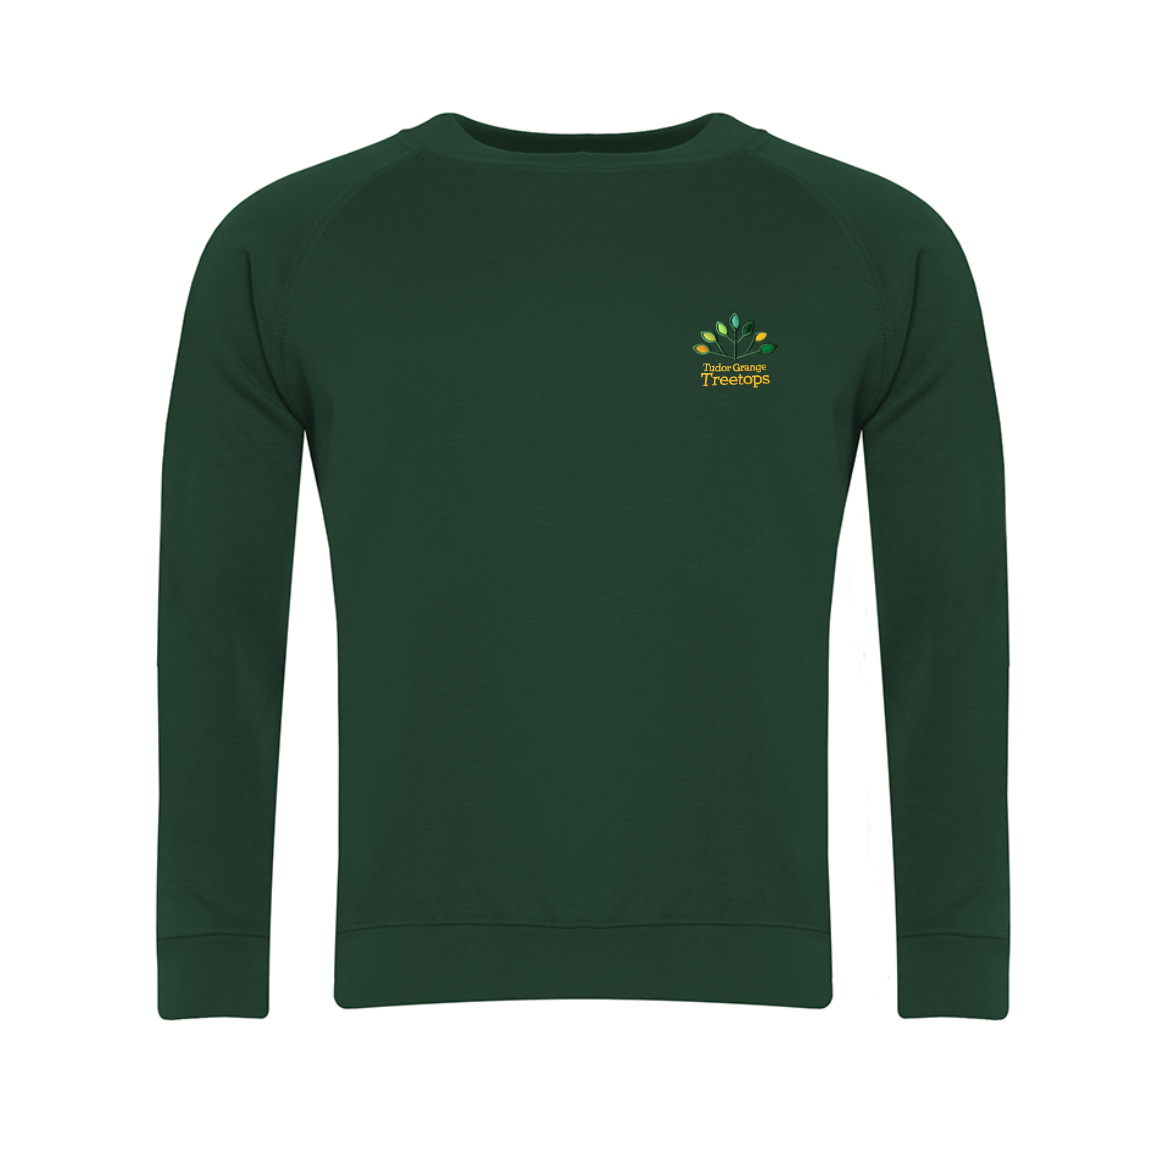 Treetops Bottle Crew Neck Sweatshirt w/Logo - Schoolwear Solutions